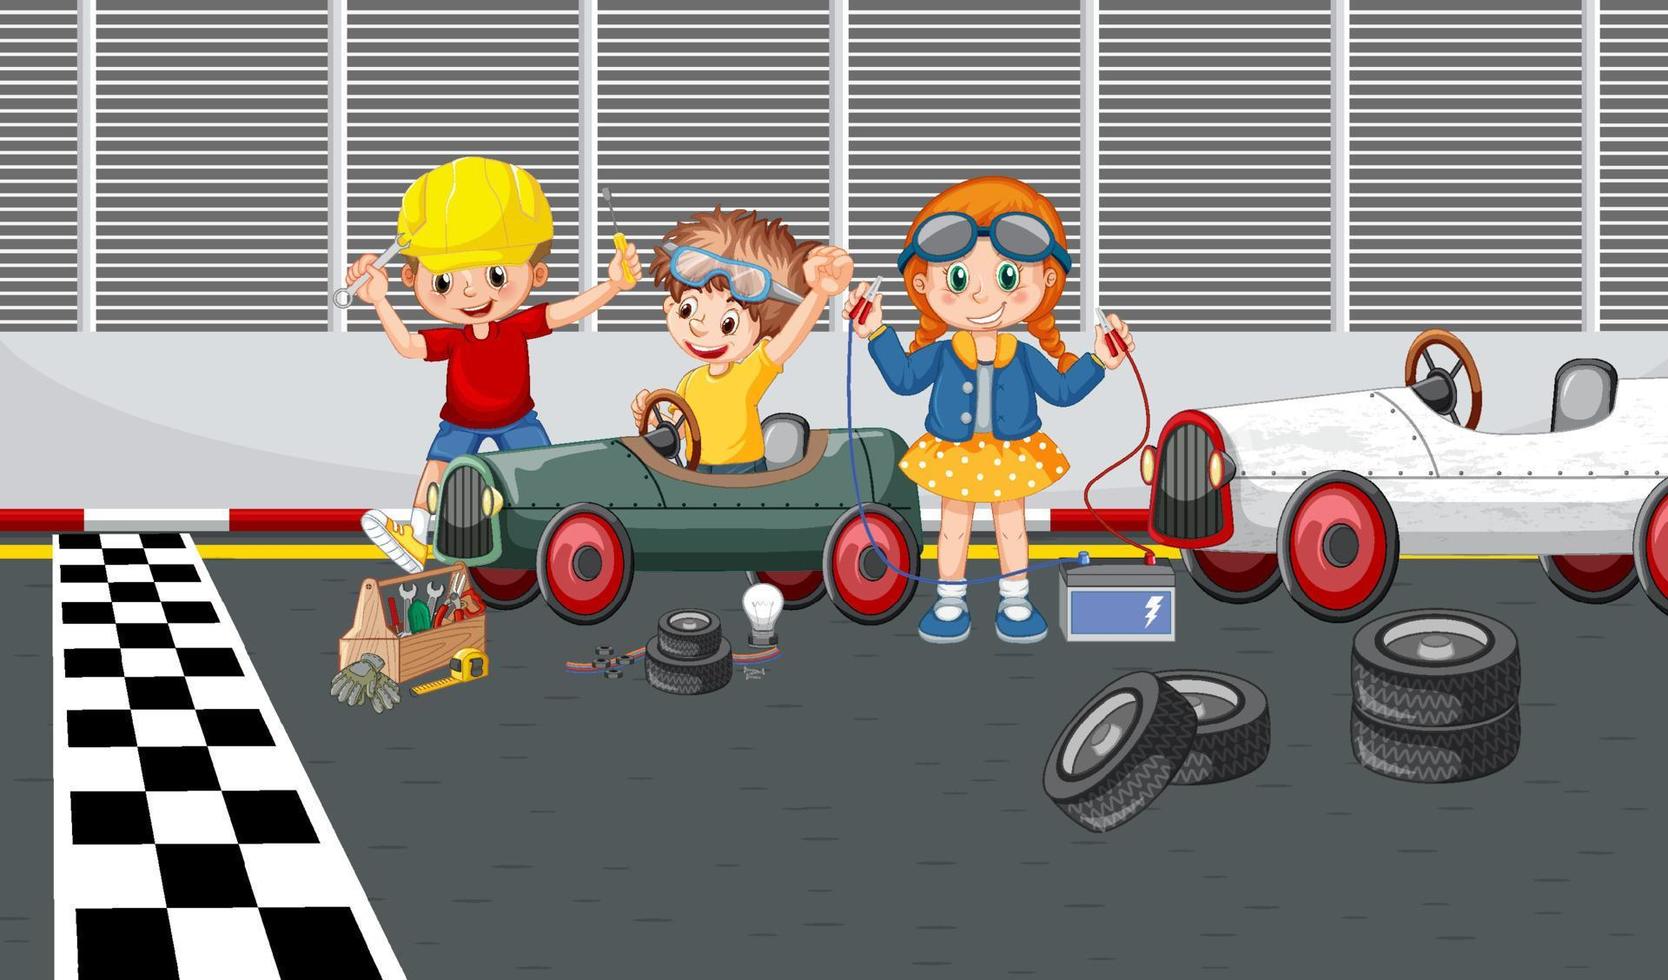 soapbox derby-scène met racewagen voor kinderen vector